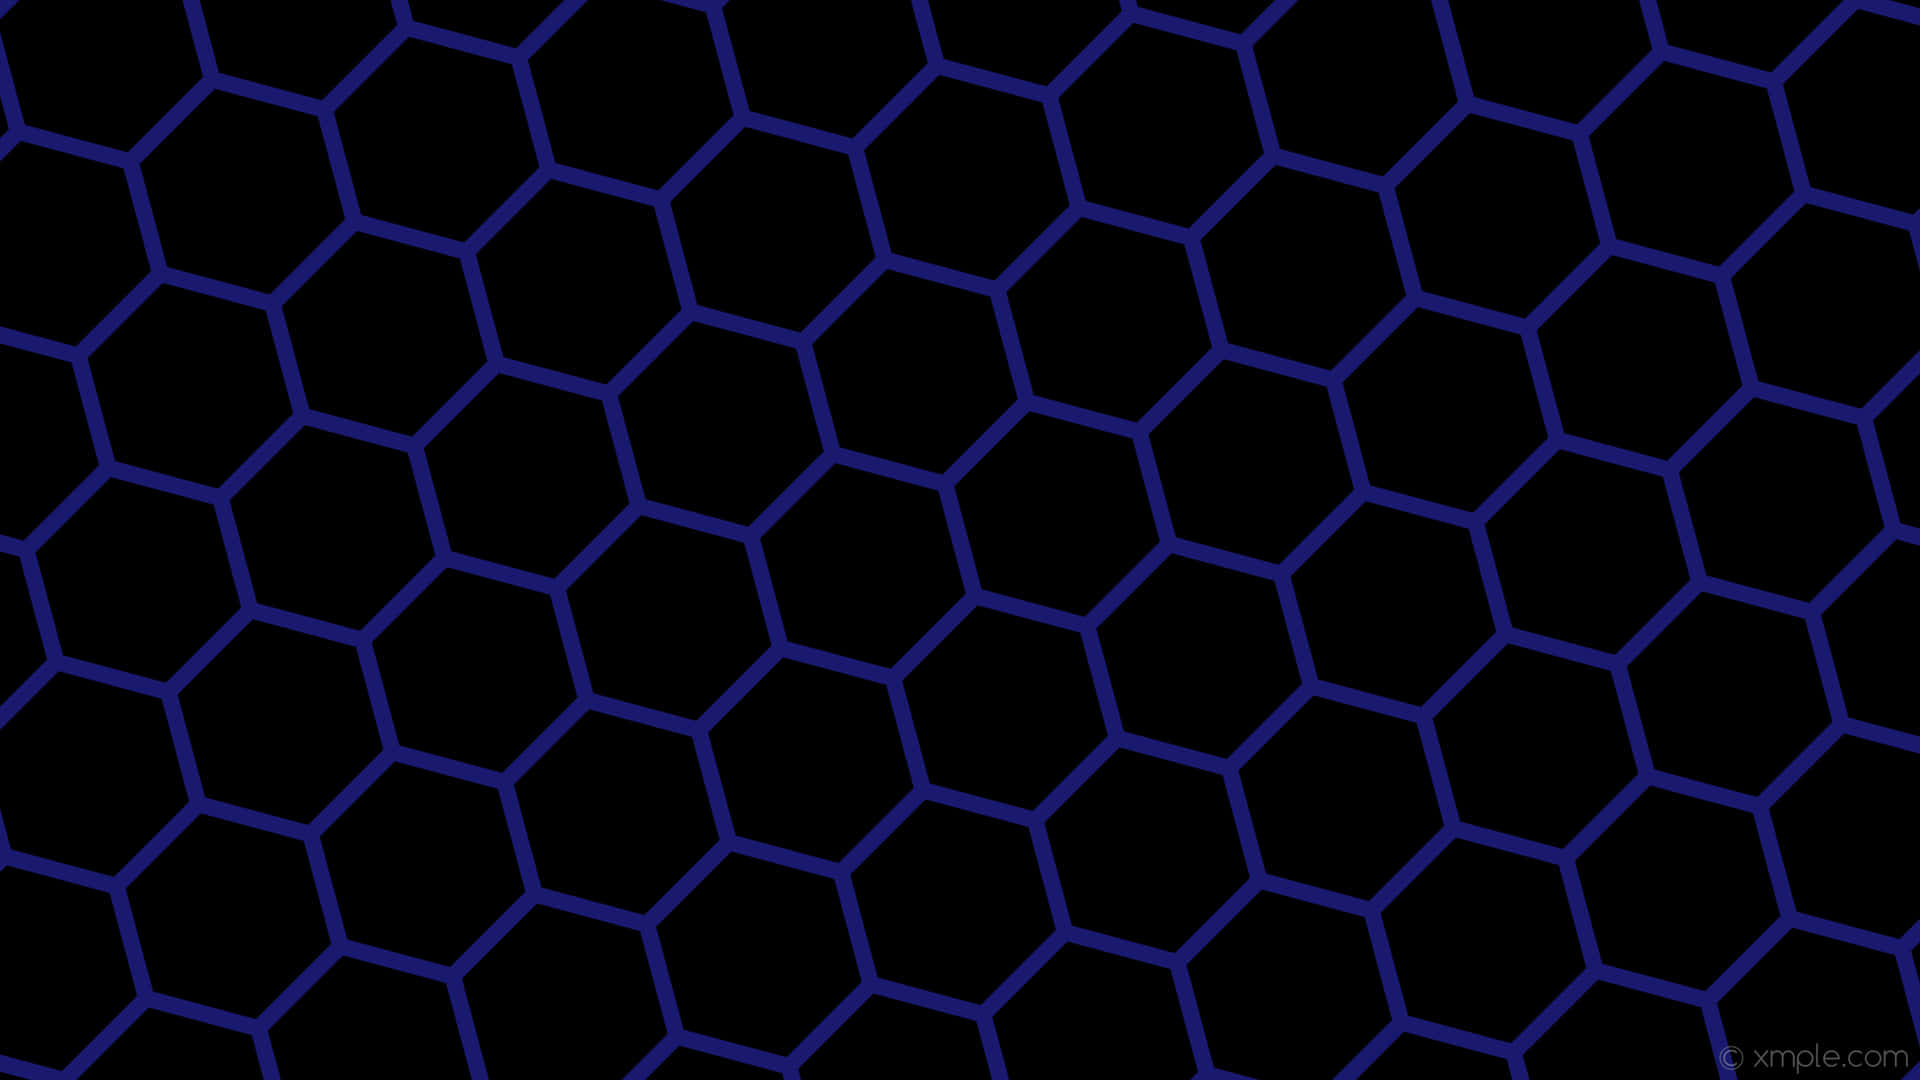 A Black And Blue Hexagonal Pattern Wallpaper